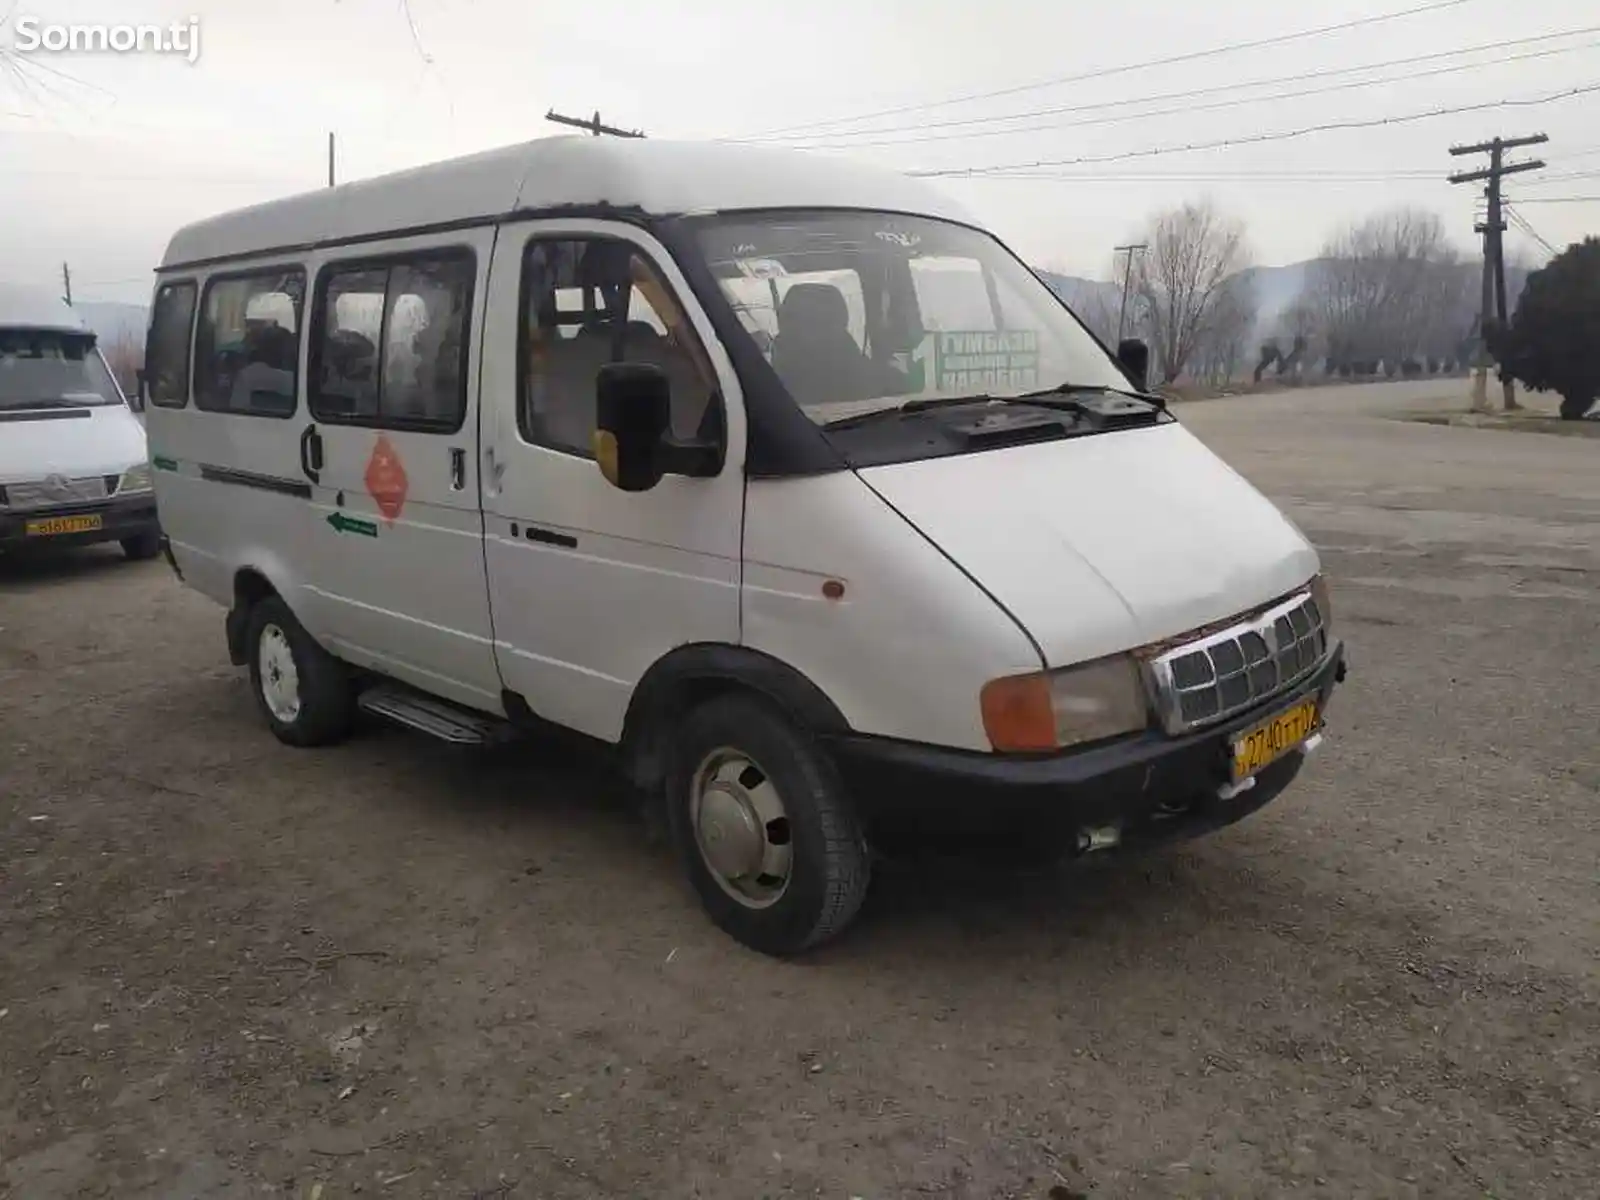 Микроавтобус Газель, 2003-2